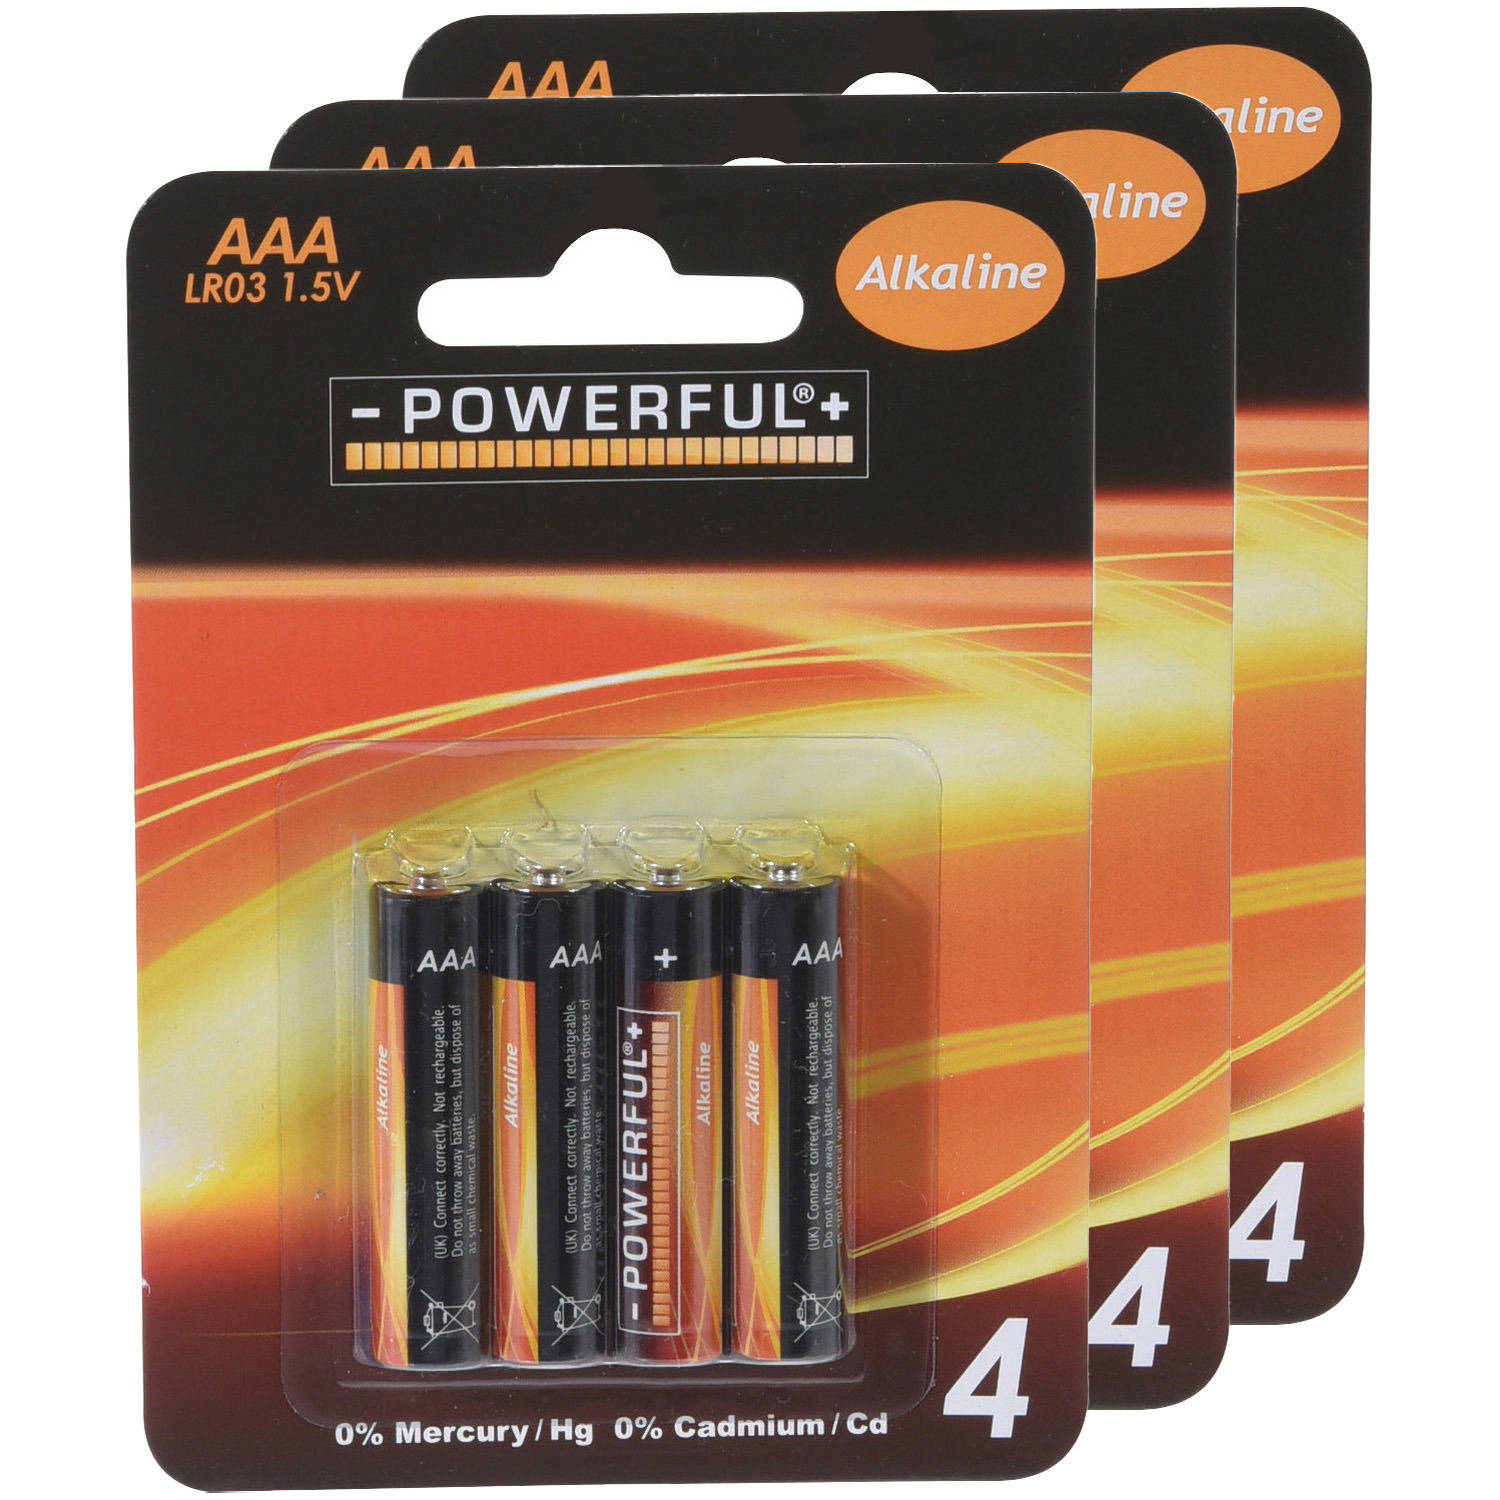 Powerful Batterijen AAA type 12x stuks Alkaline Minipenlites AAA batterijen